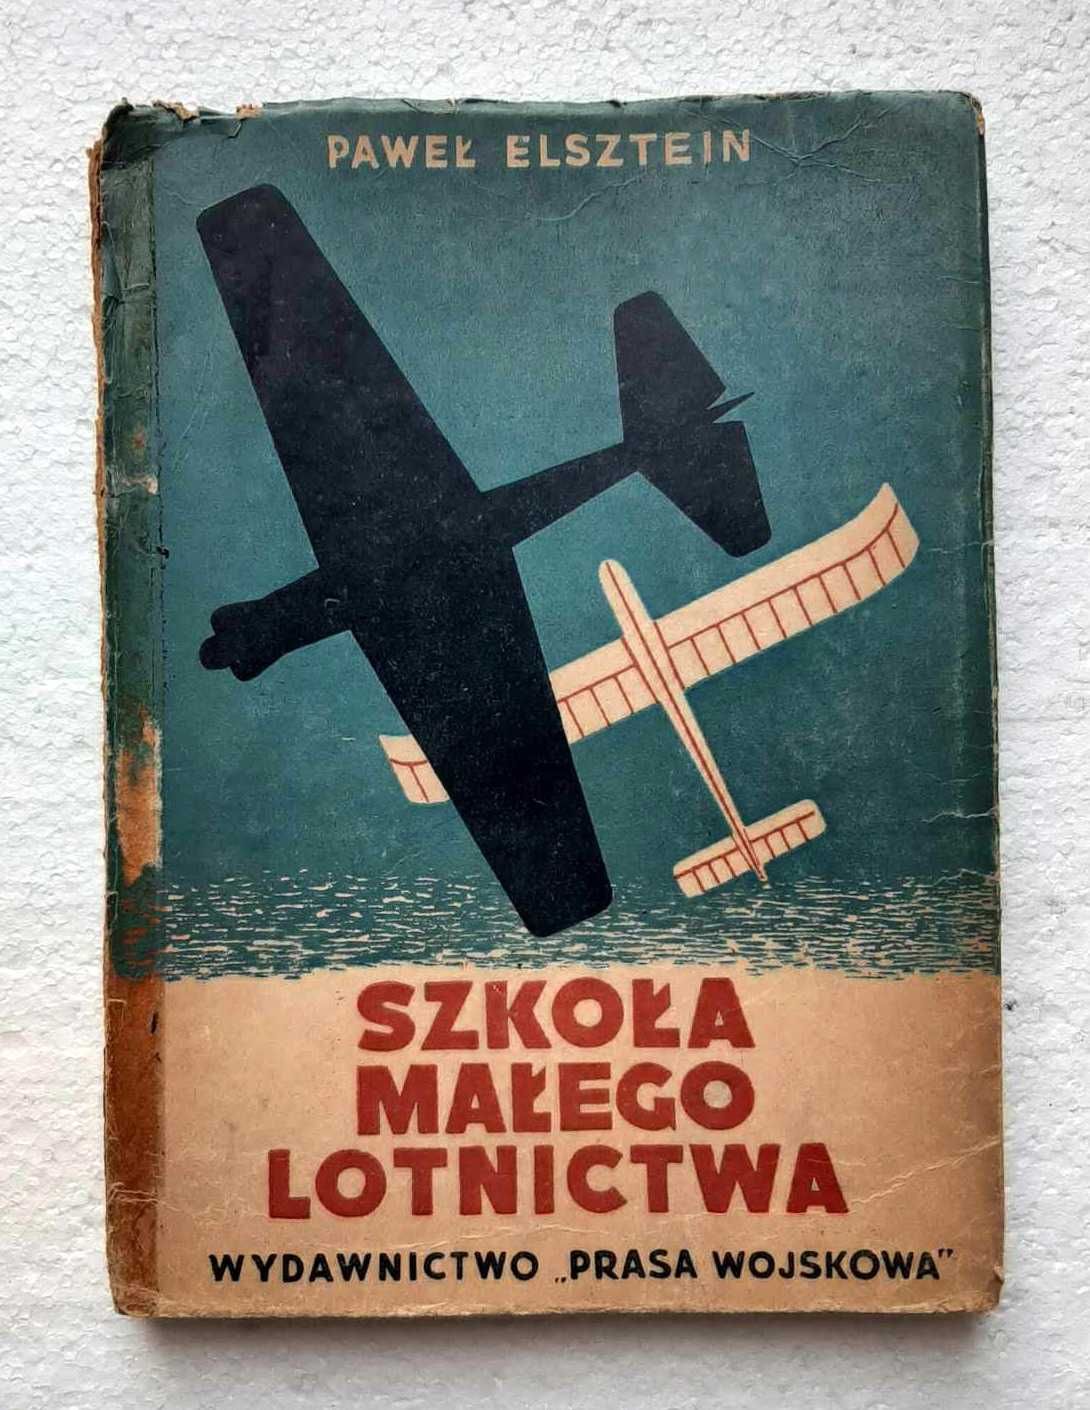 Szkoła małego lotnictwa, 1950 r.
Paweł Elsztein